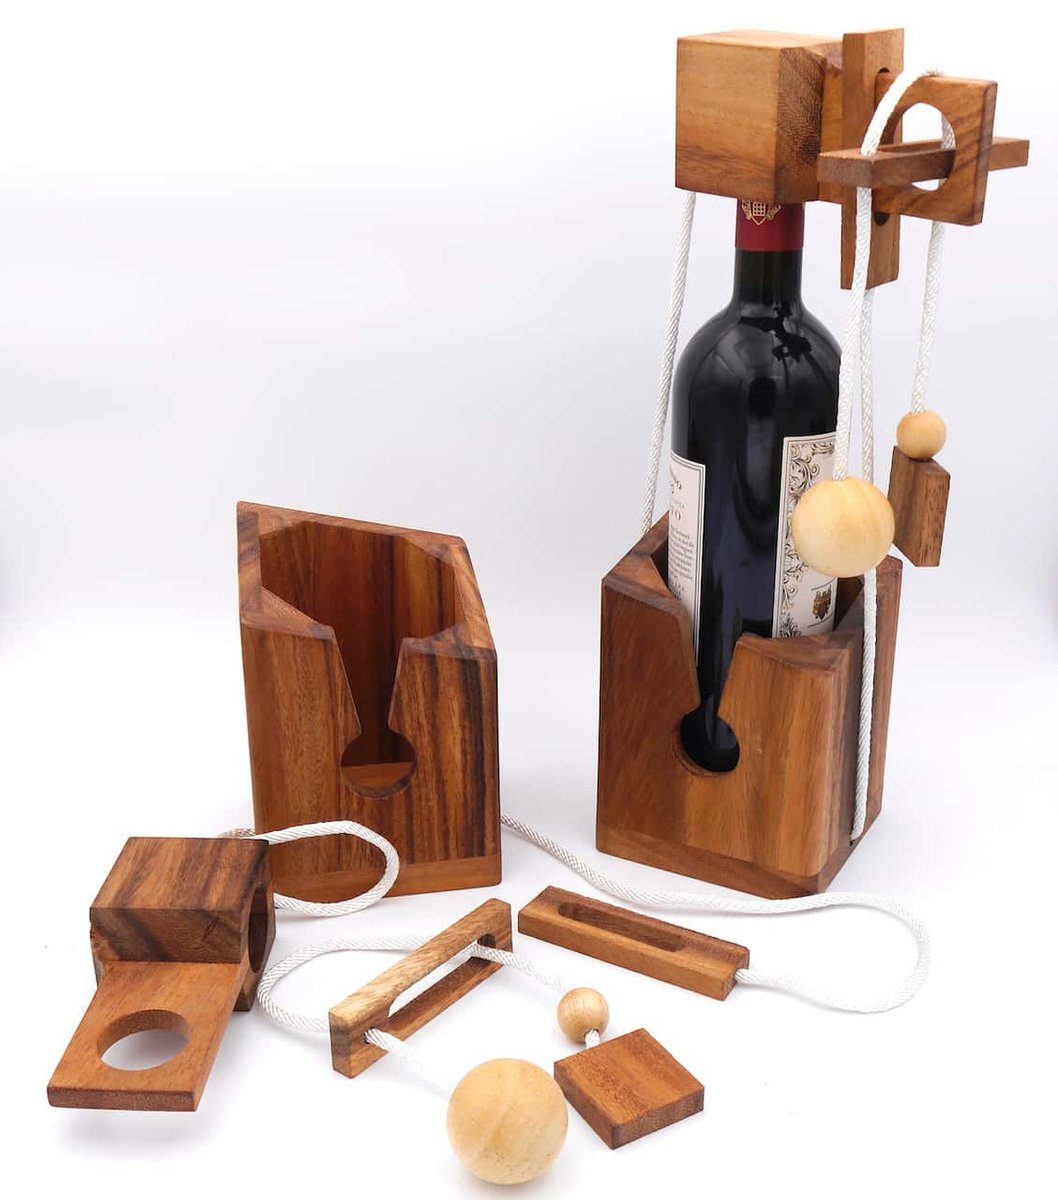 ROMBOL Denkspiele Spiel, Geschenkverpackung Flaschentresor – Edles Denkspiel aus Holz für große Flaschen, wiederverwendbar